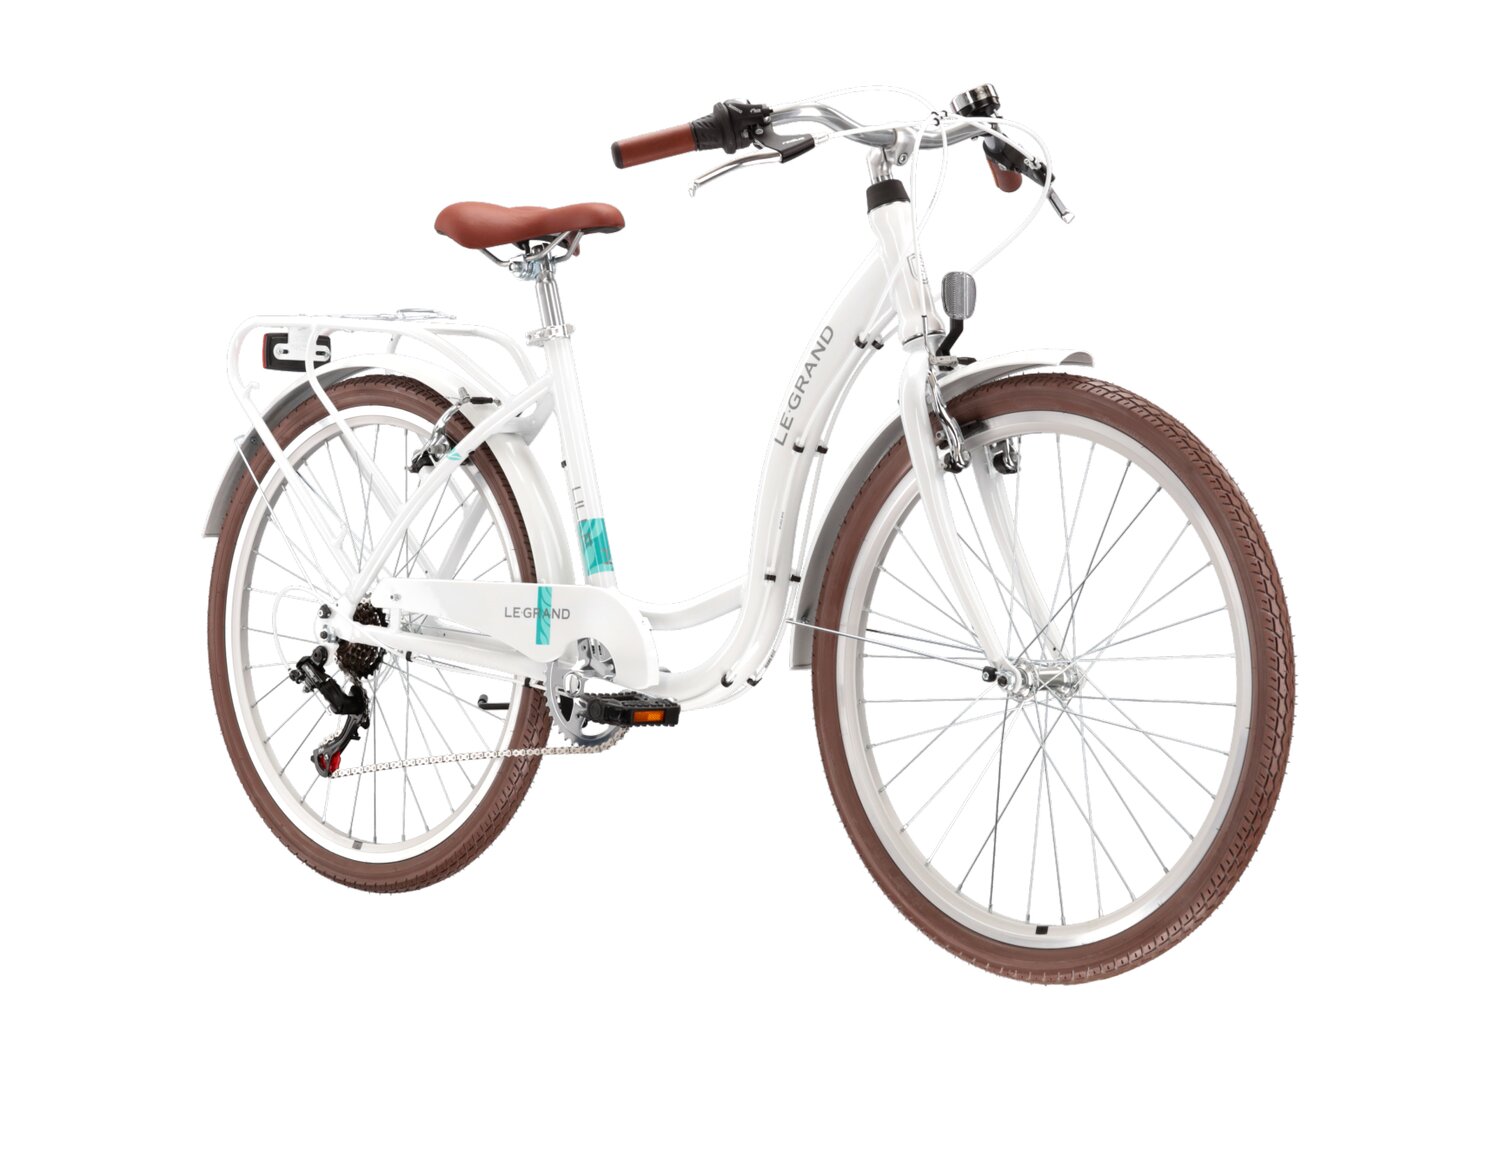  Rower miejski Le Grand Lille 1.0 na aluminiowej ramie w kolorze białym wyposażony w osprzęt Shimano